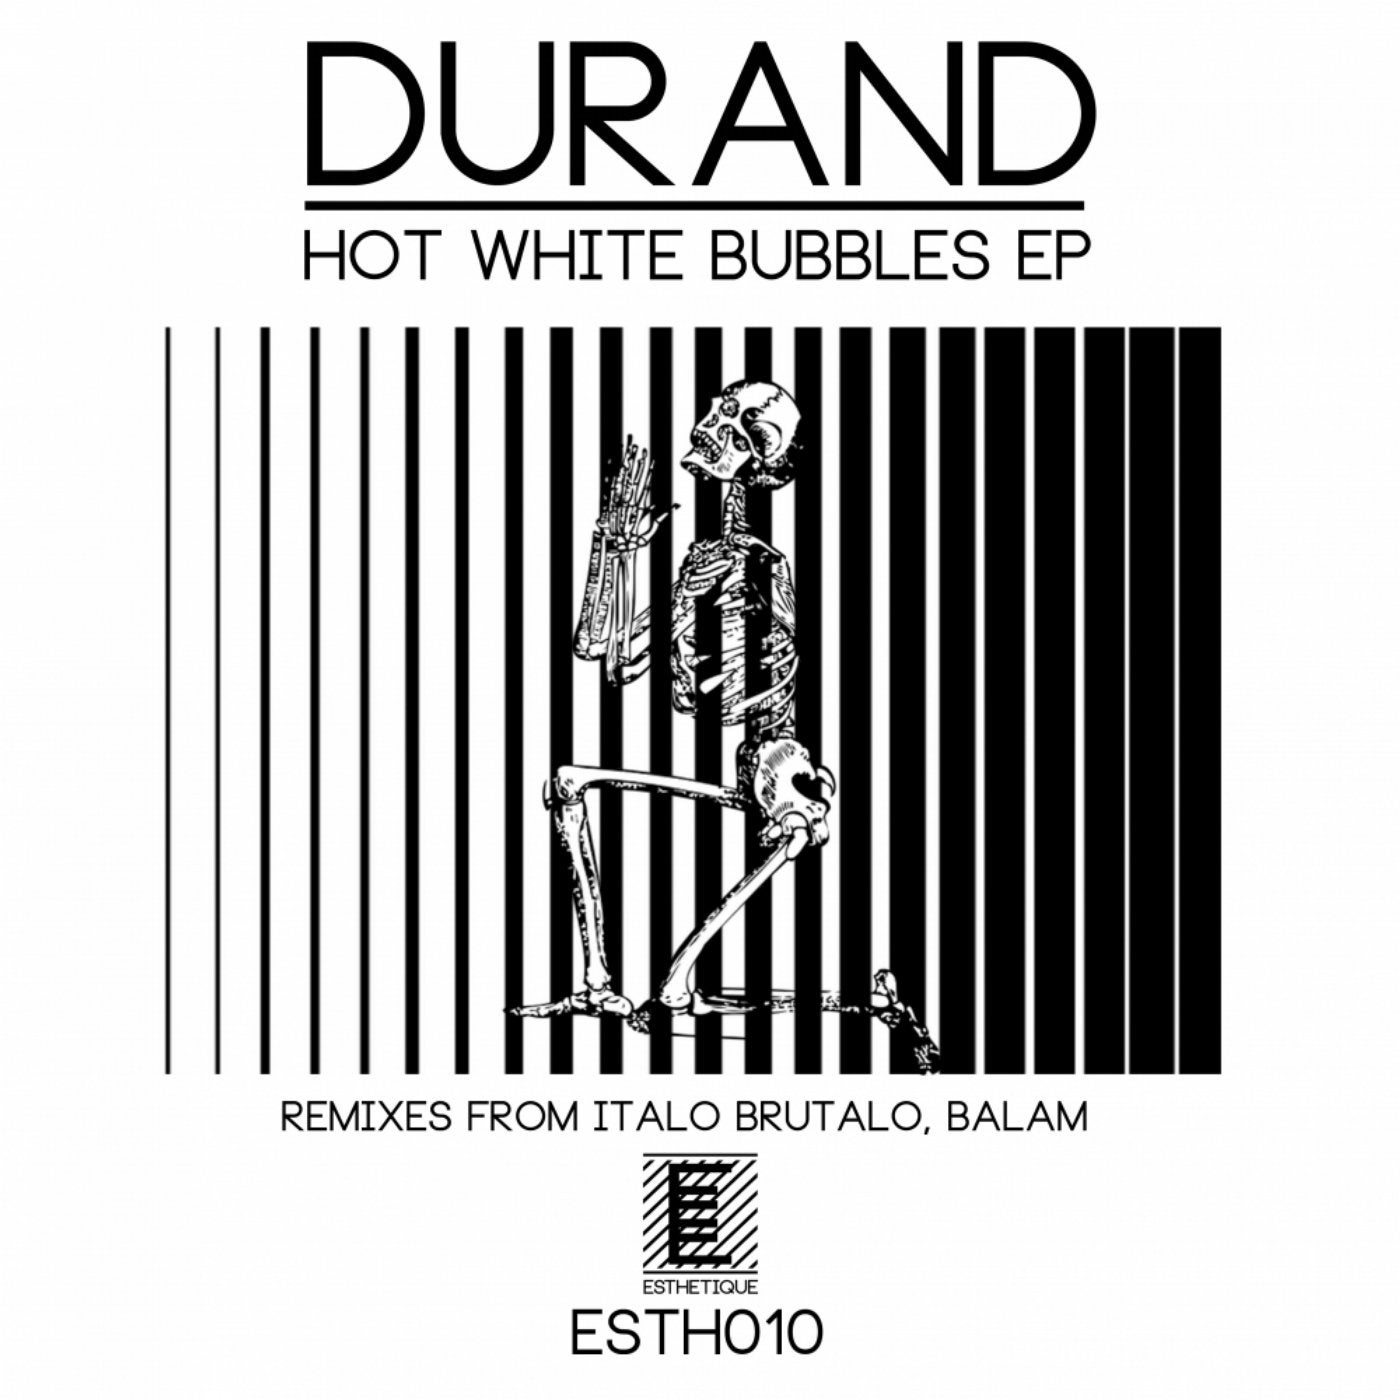 Hot White Bubbles EP